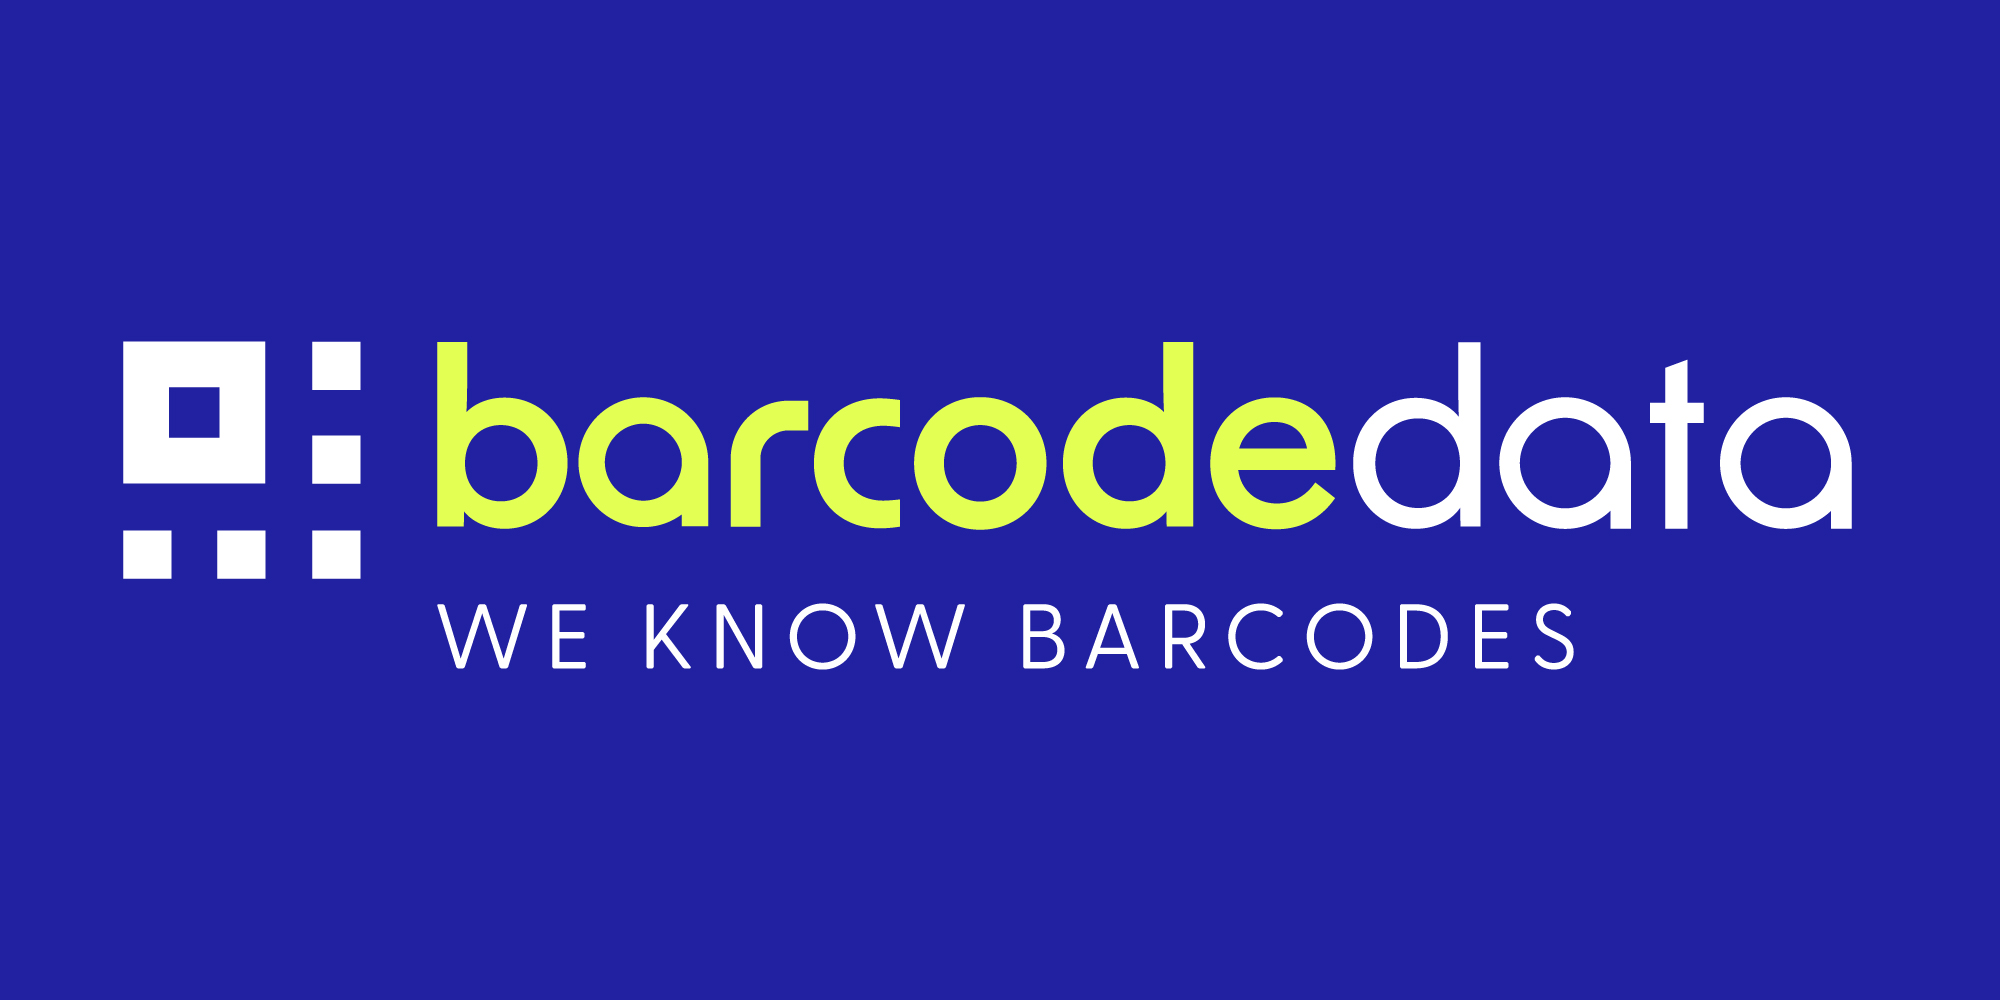 (c) Barcodedata.co.uk